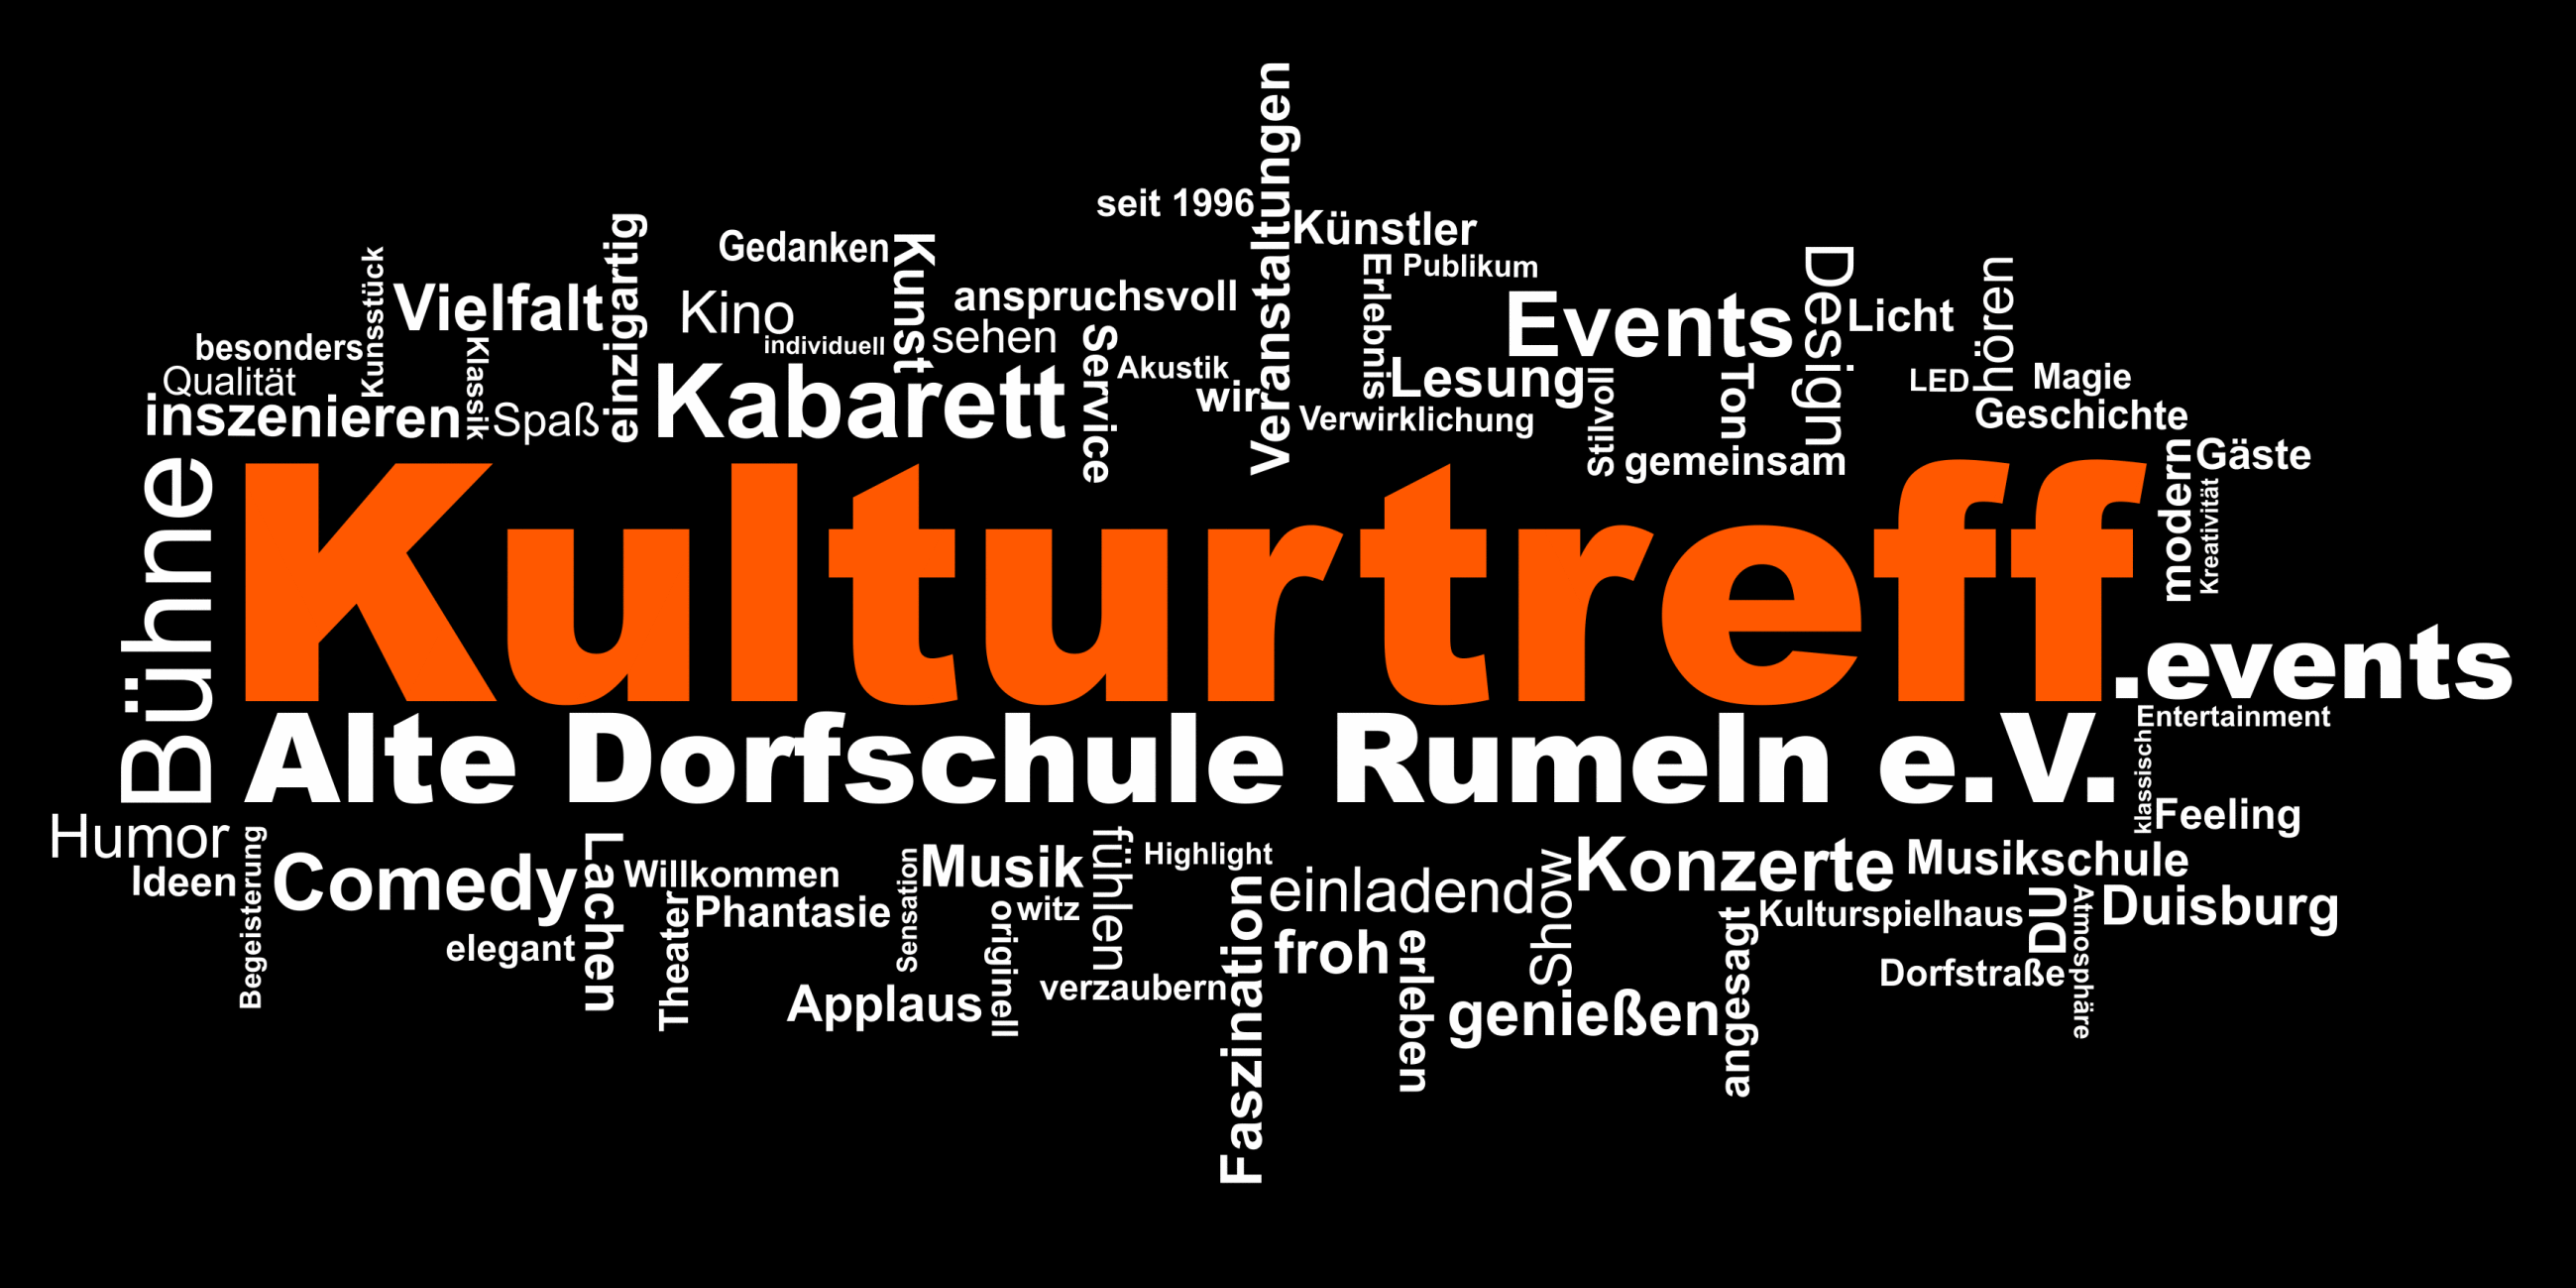 (c) Kulturtreff-altedorfschule.de